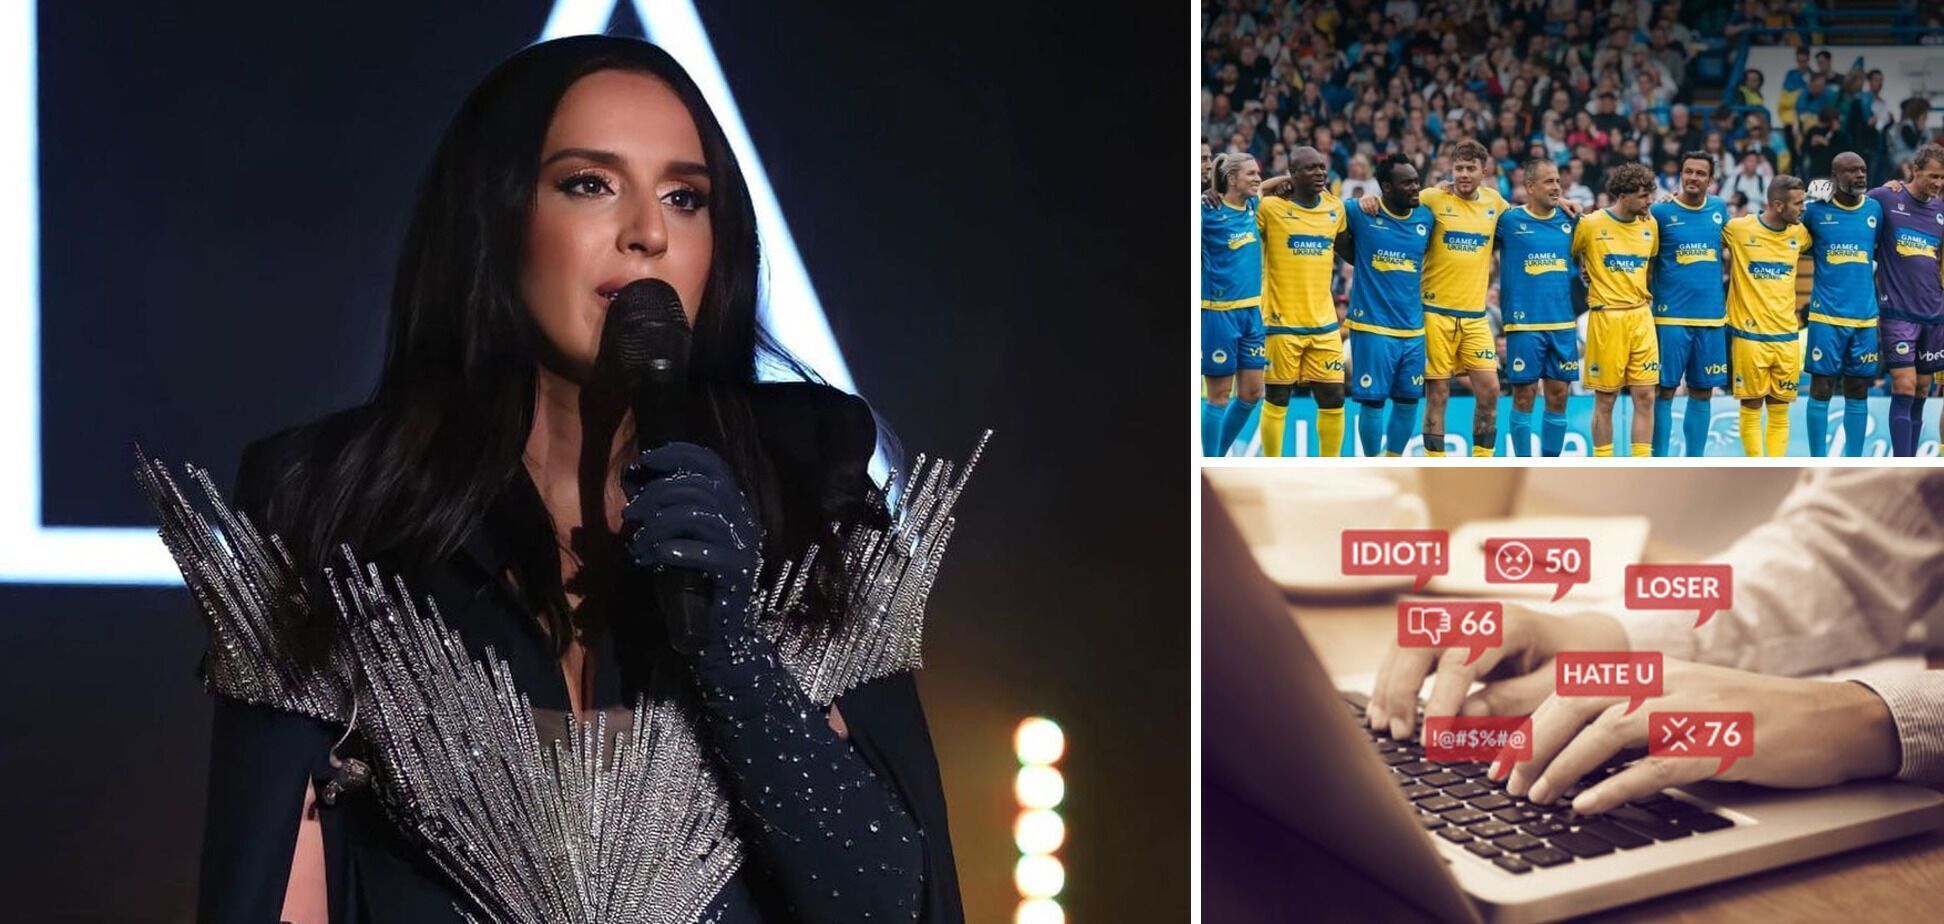 Стадион в Польше фантастически исполнил гимн Украины перед матчем с Англией. Видео